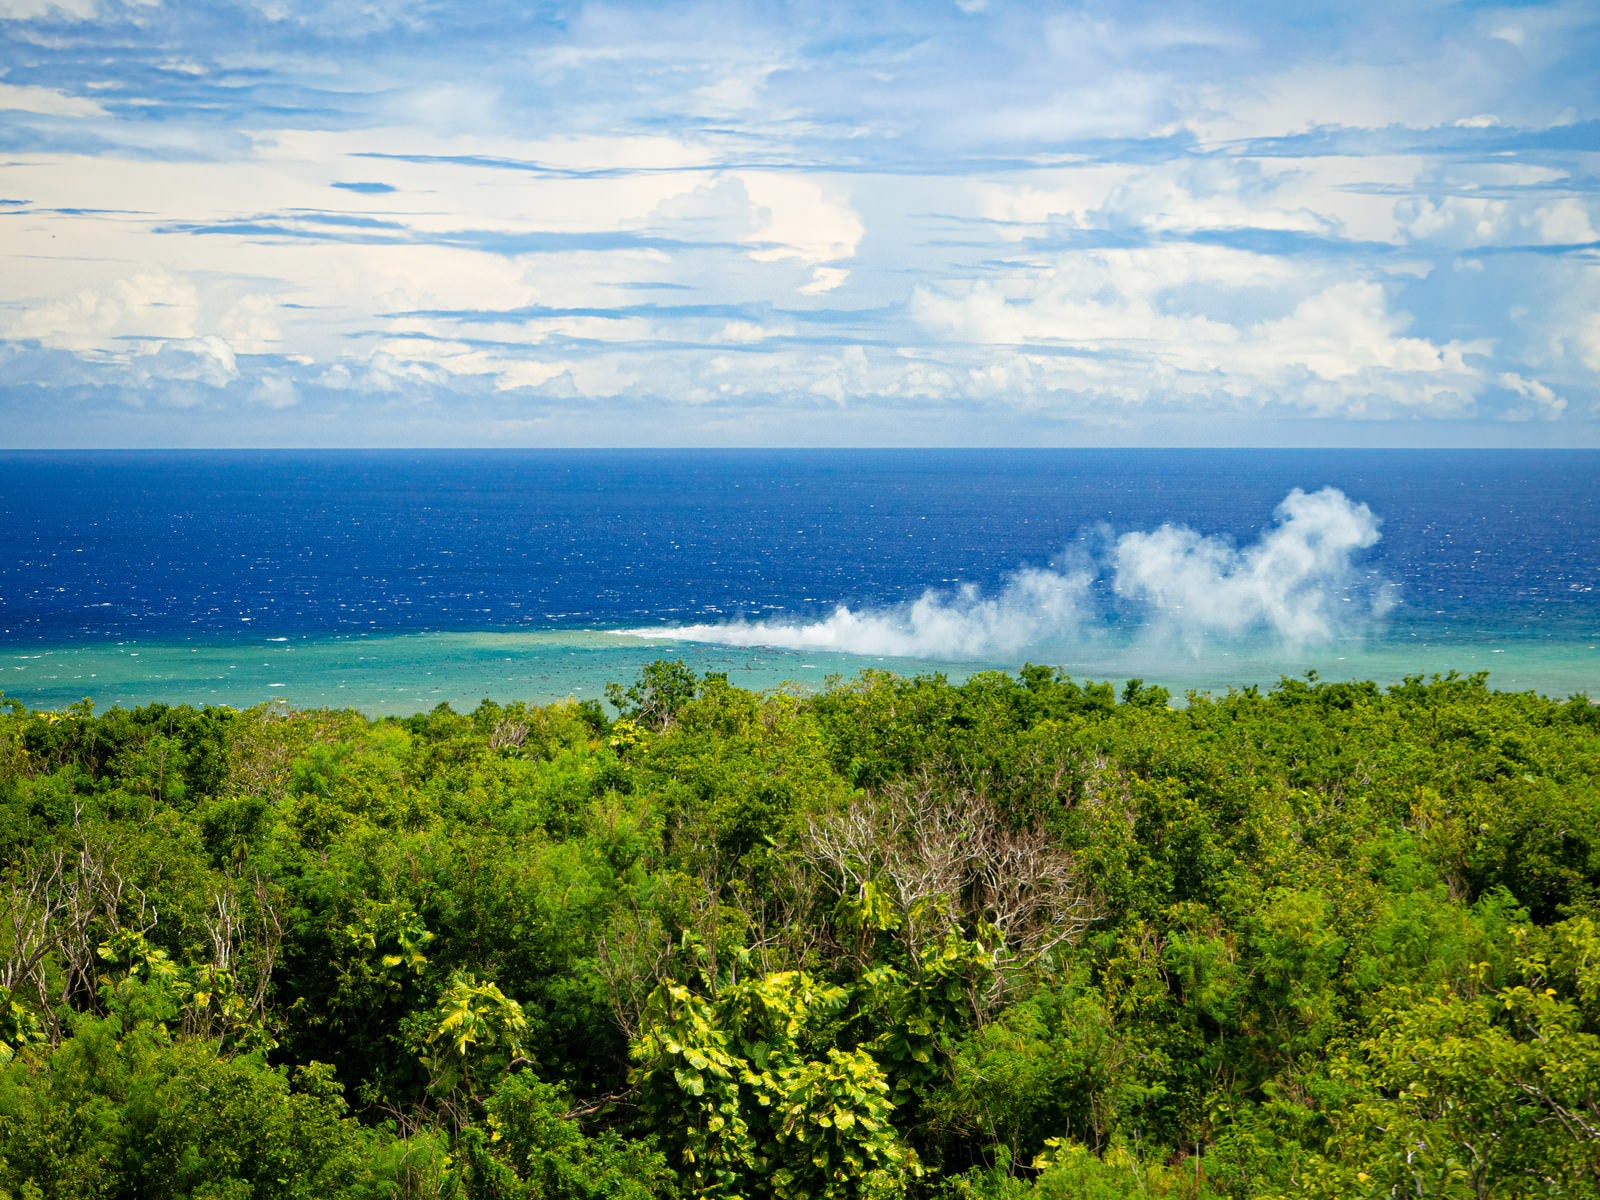 「翁浜沖の海底噴火による水蒸気が風に流される様子」の写真